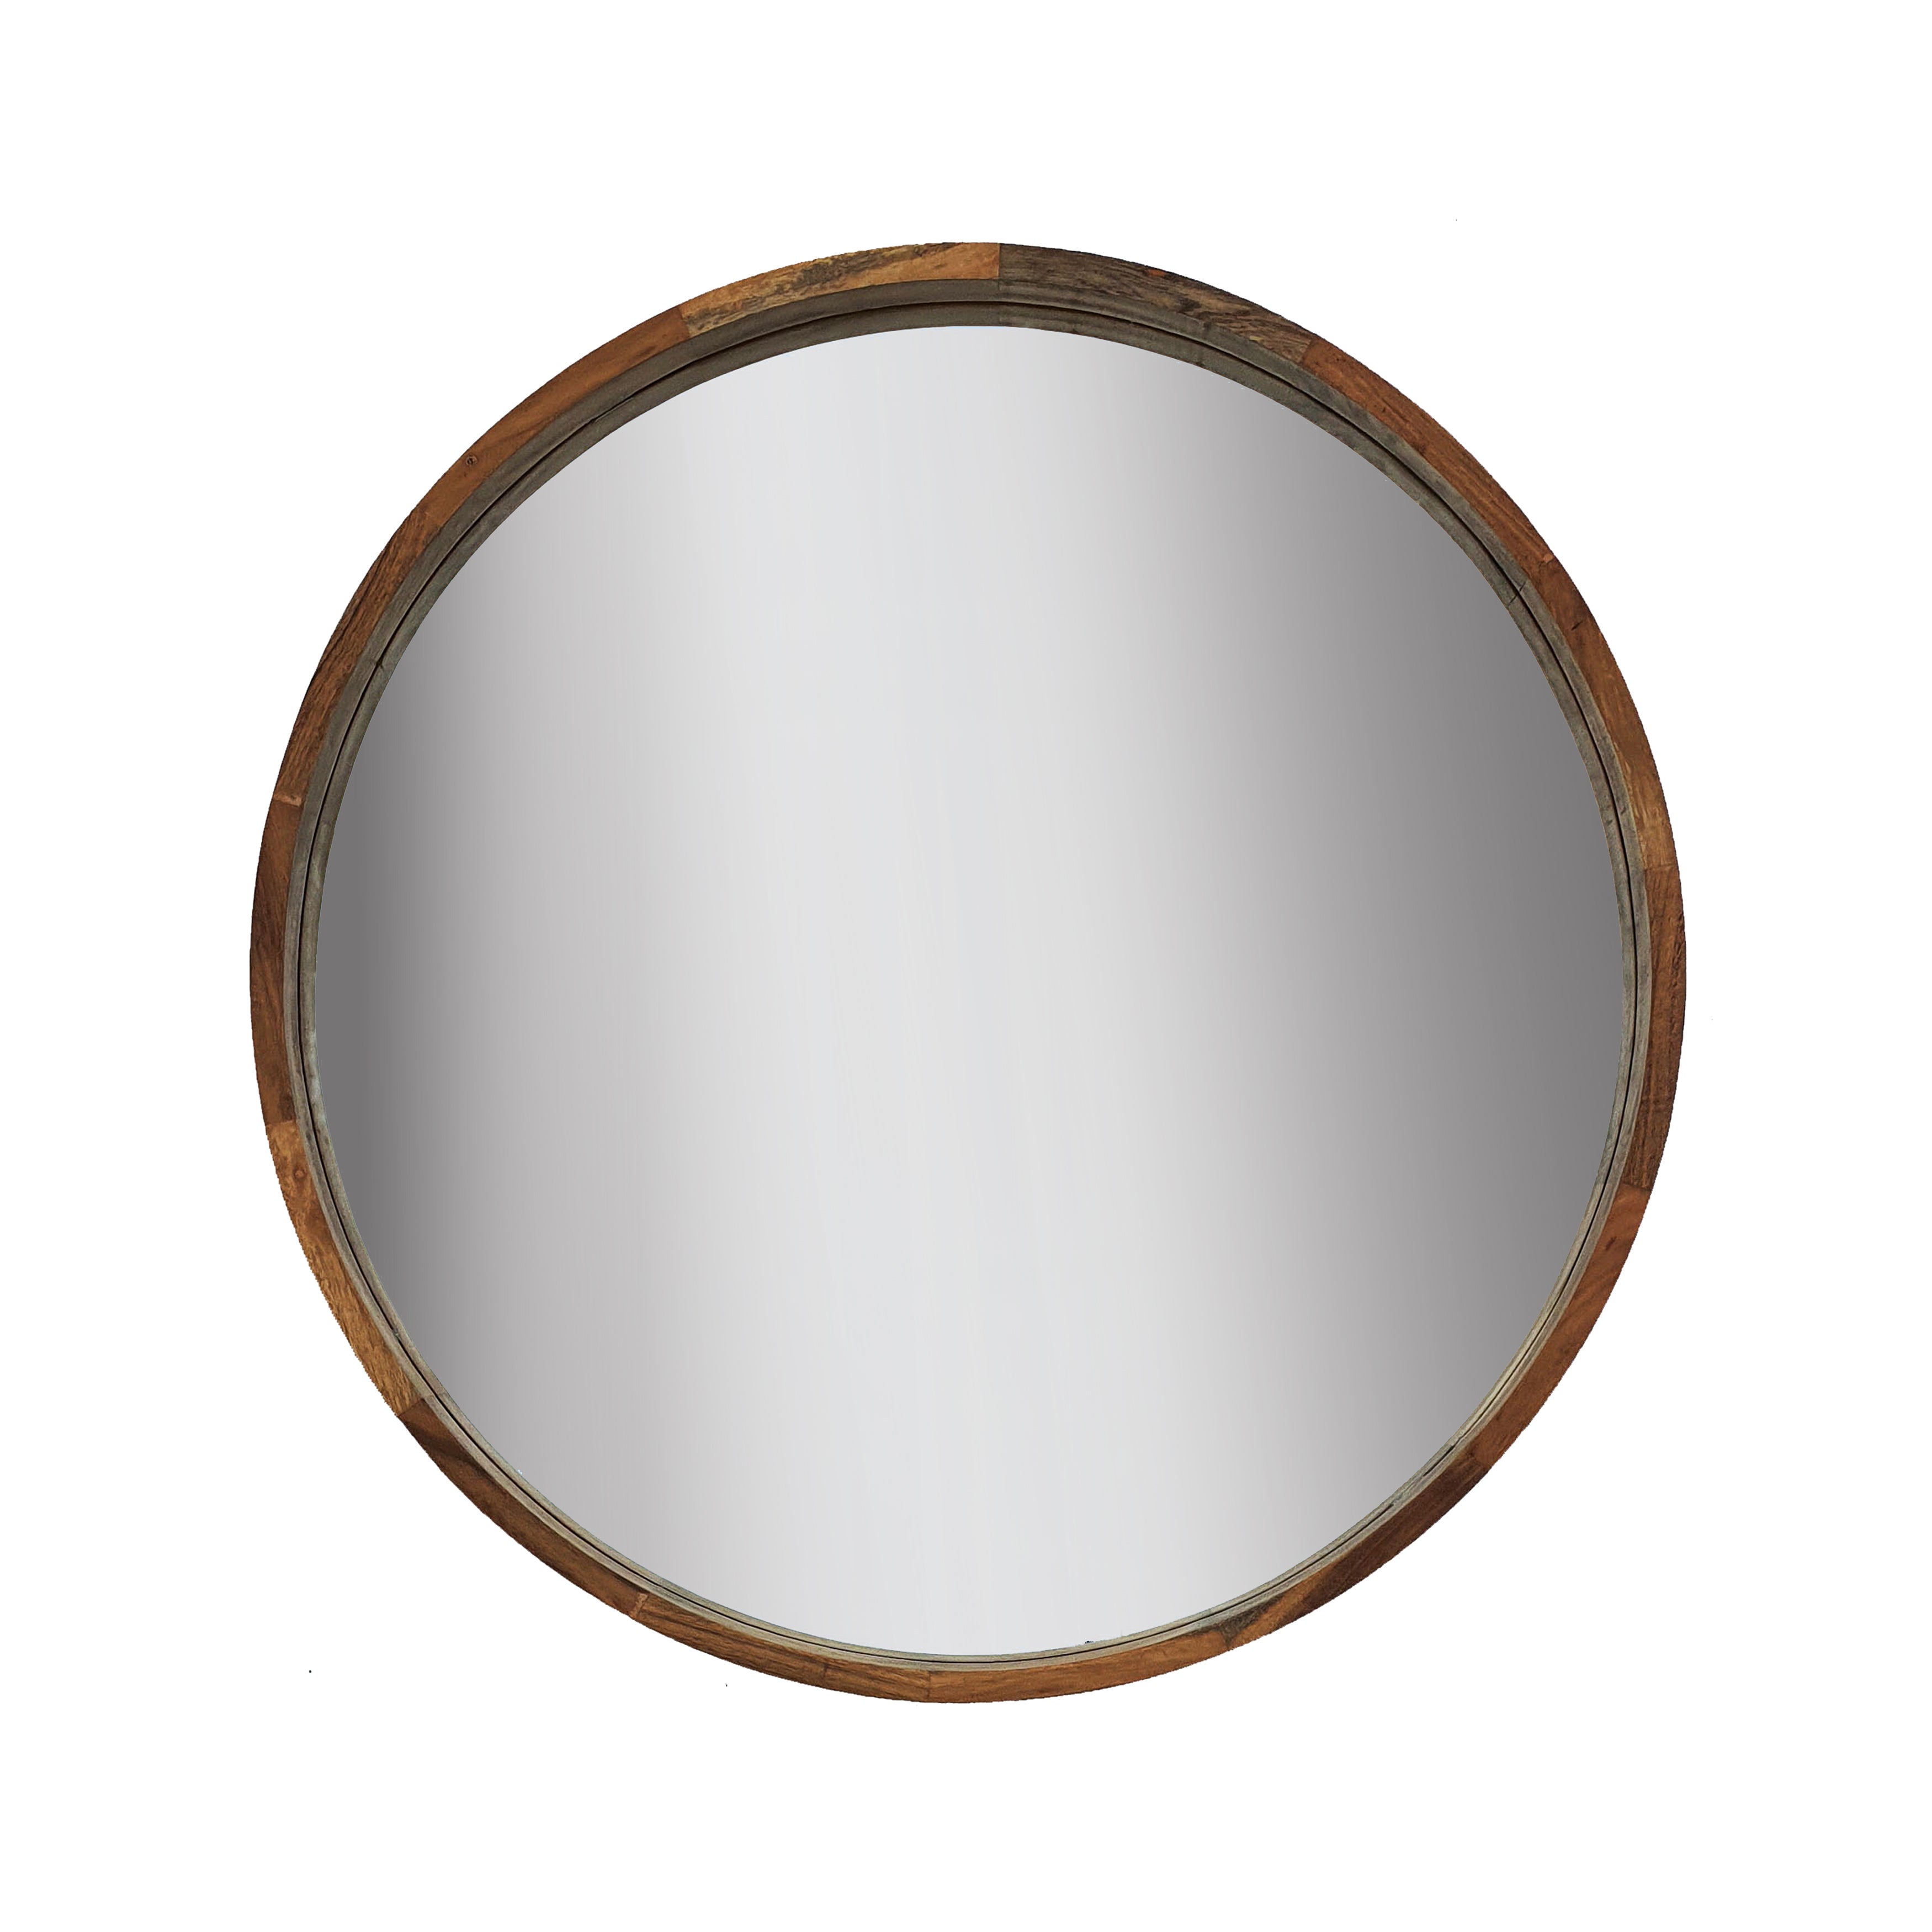 39" Round Mirror, Brown, Mirrors